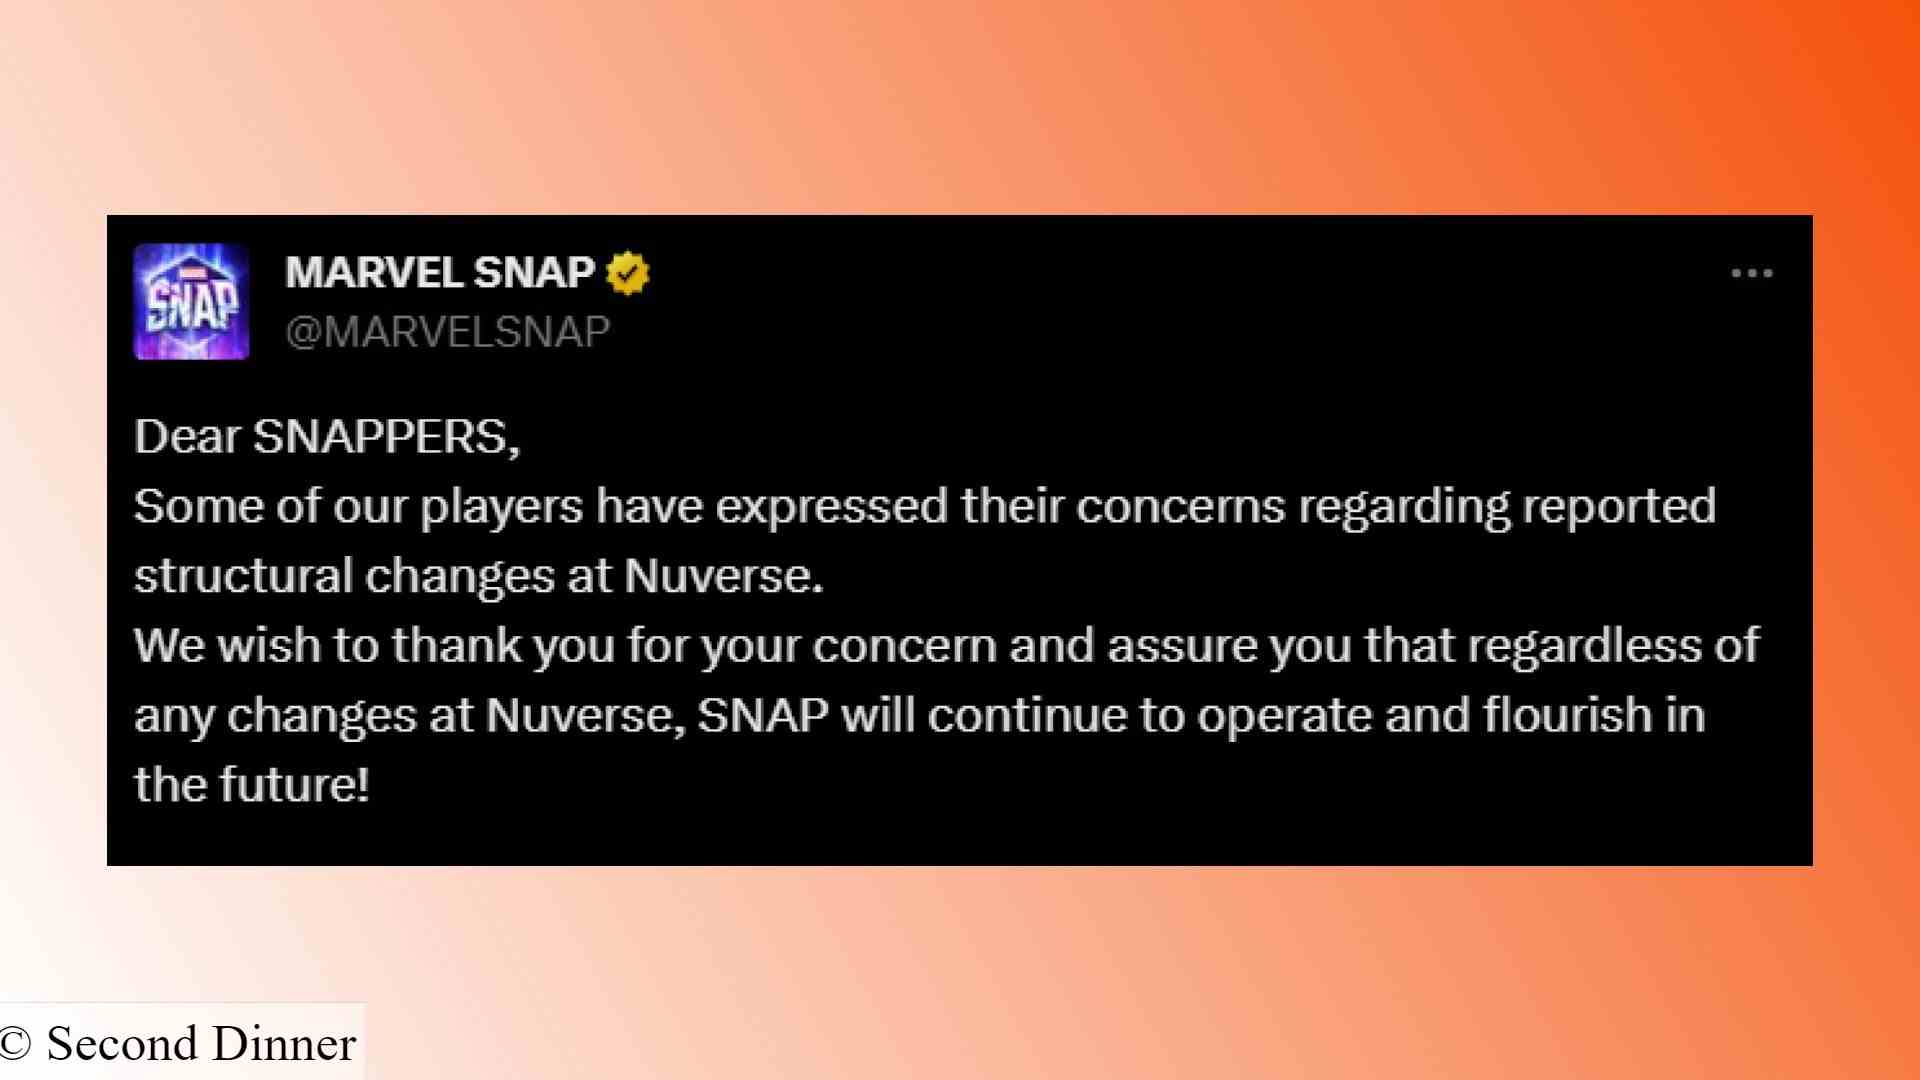 Marvel Snap kapatıldı: Süper kahraman kart oyunu hakkında Marvel Snap Twitter'dan açıklama